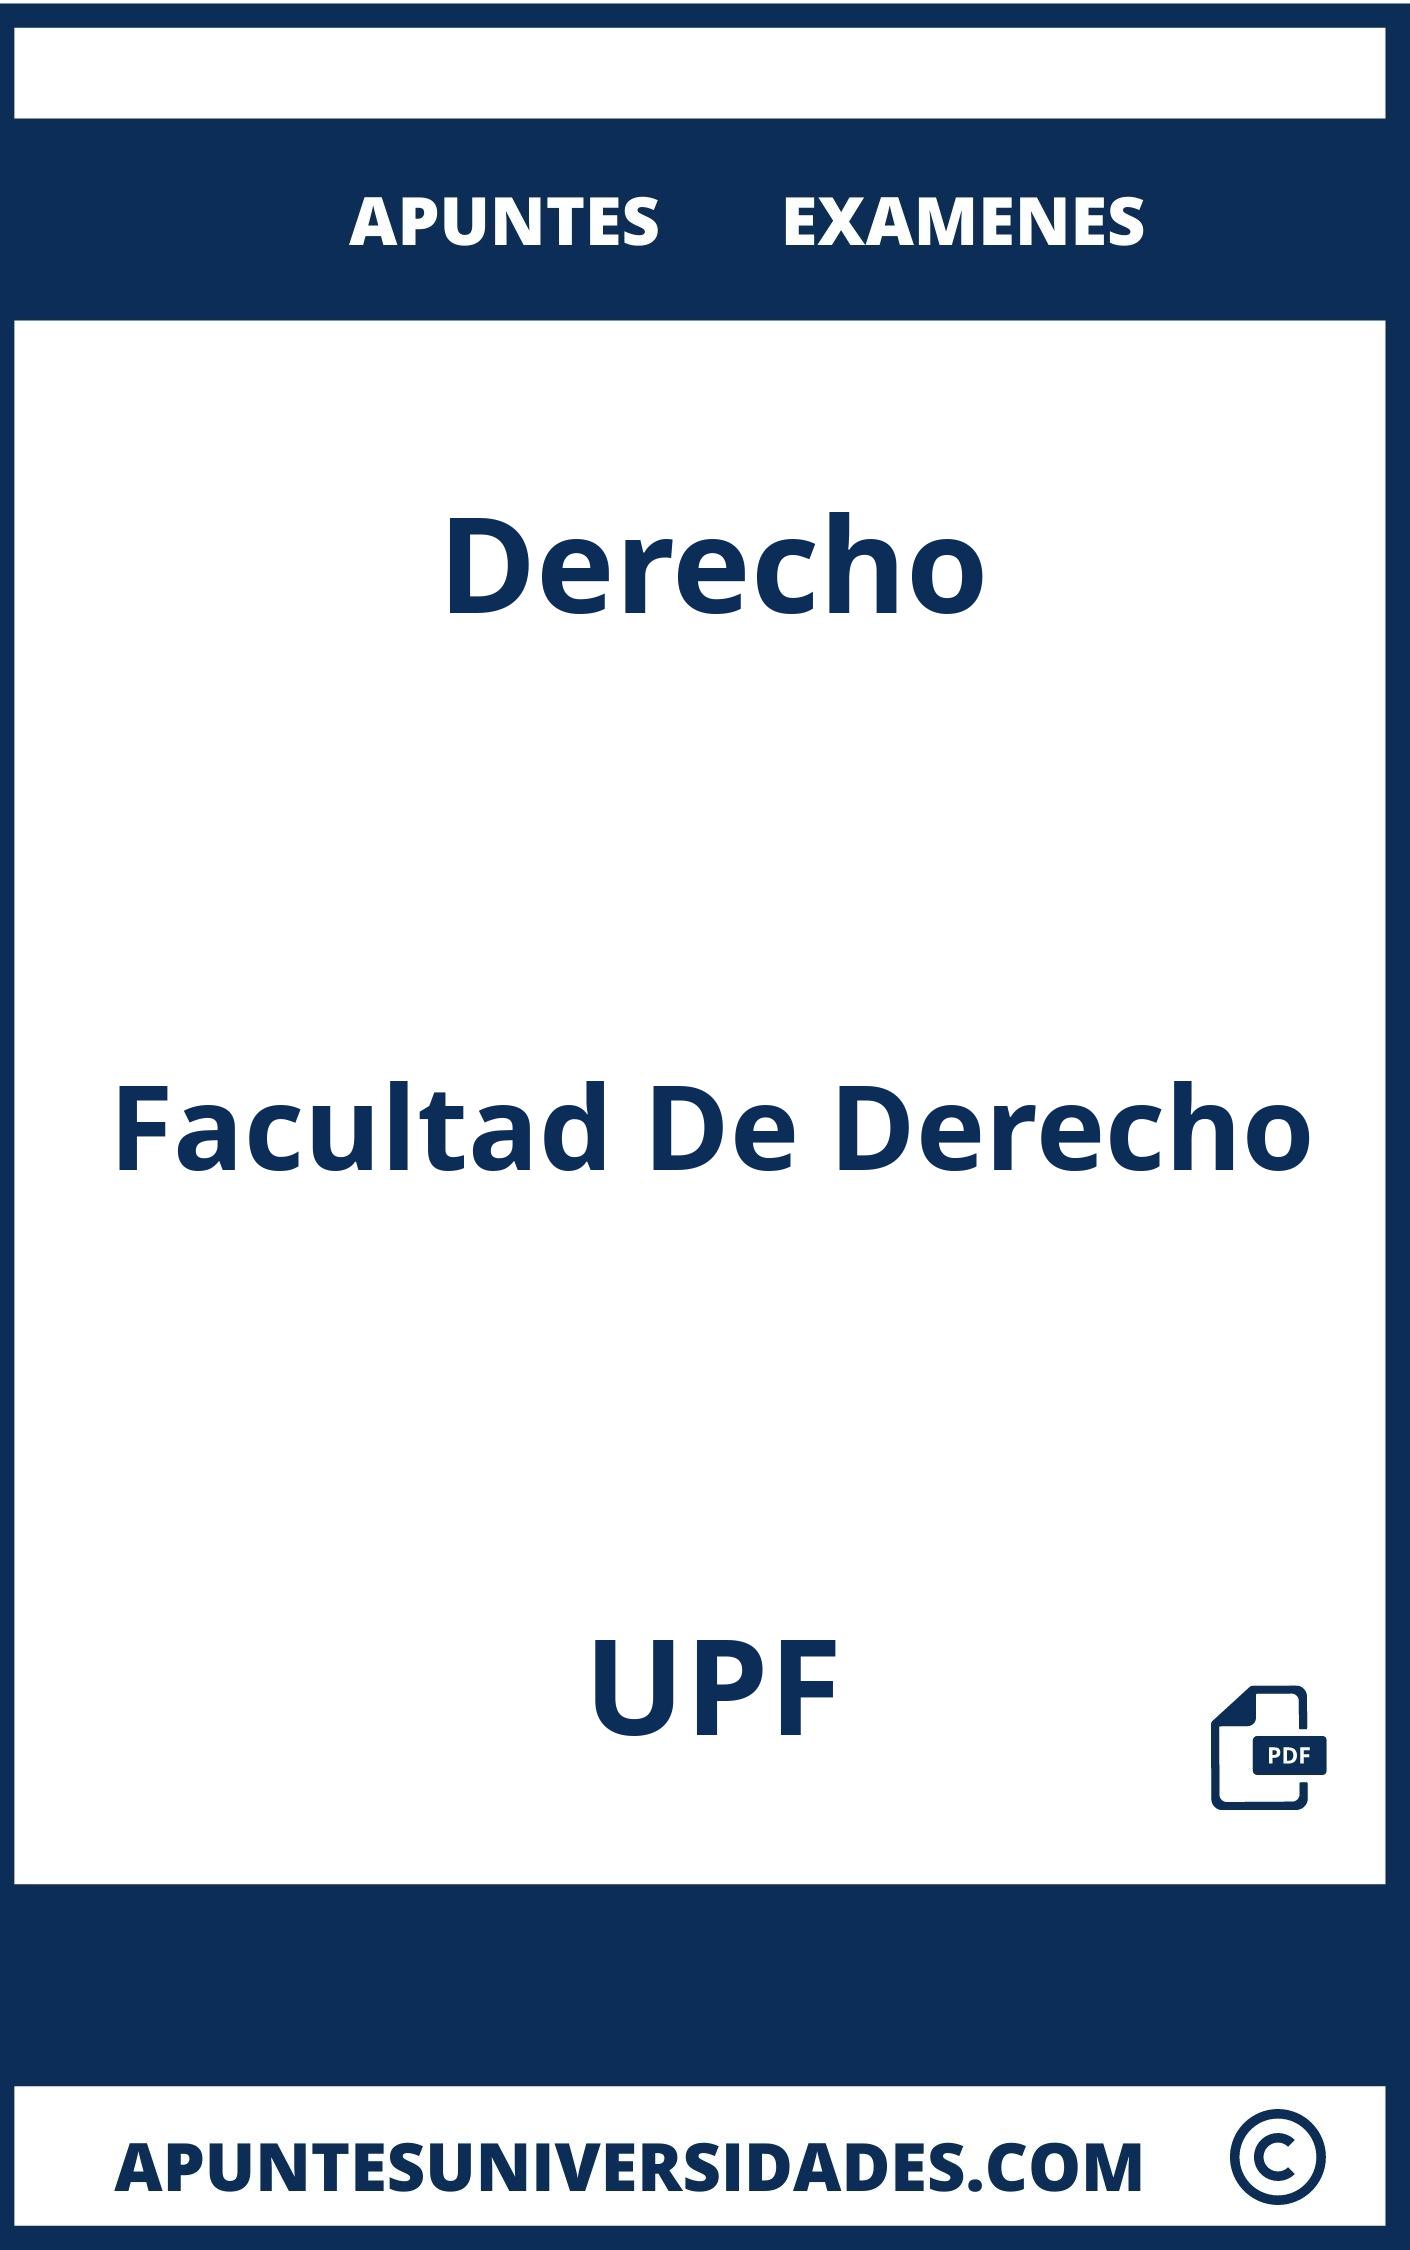 Examenes y Apuntes Derecho UPF